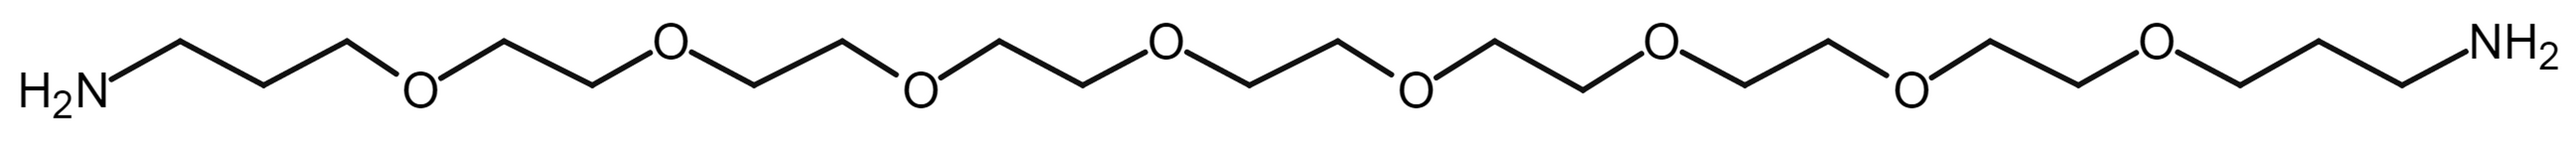 PEG8-bis(C3-amine)